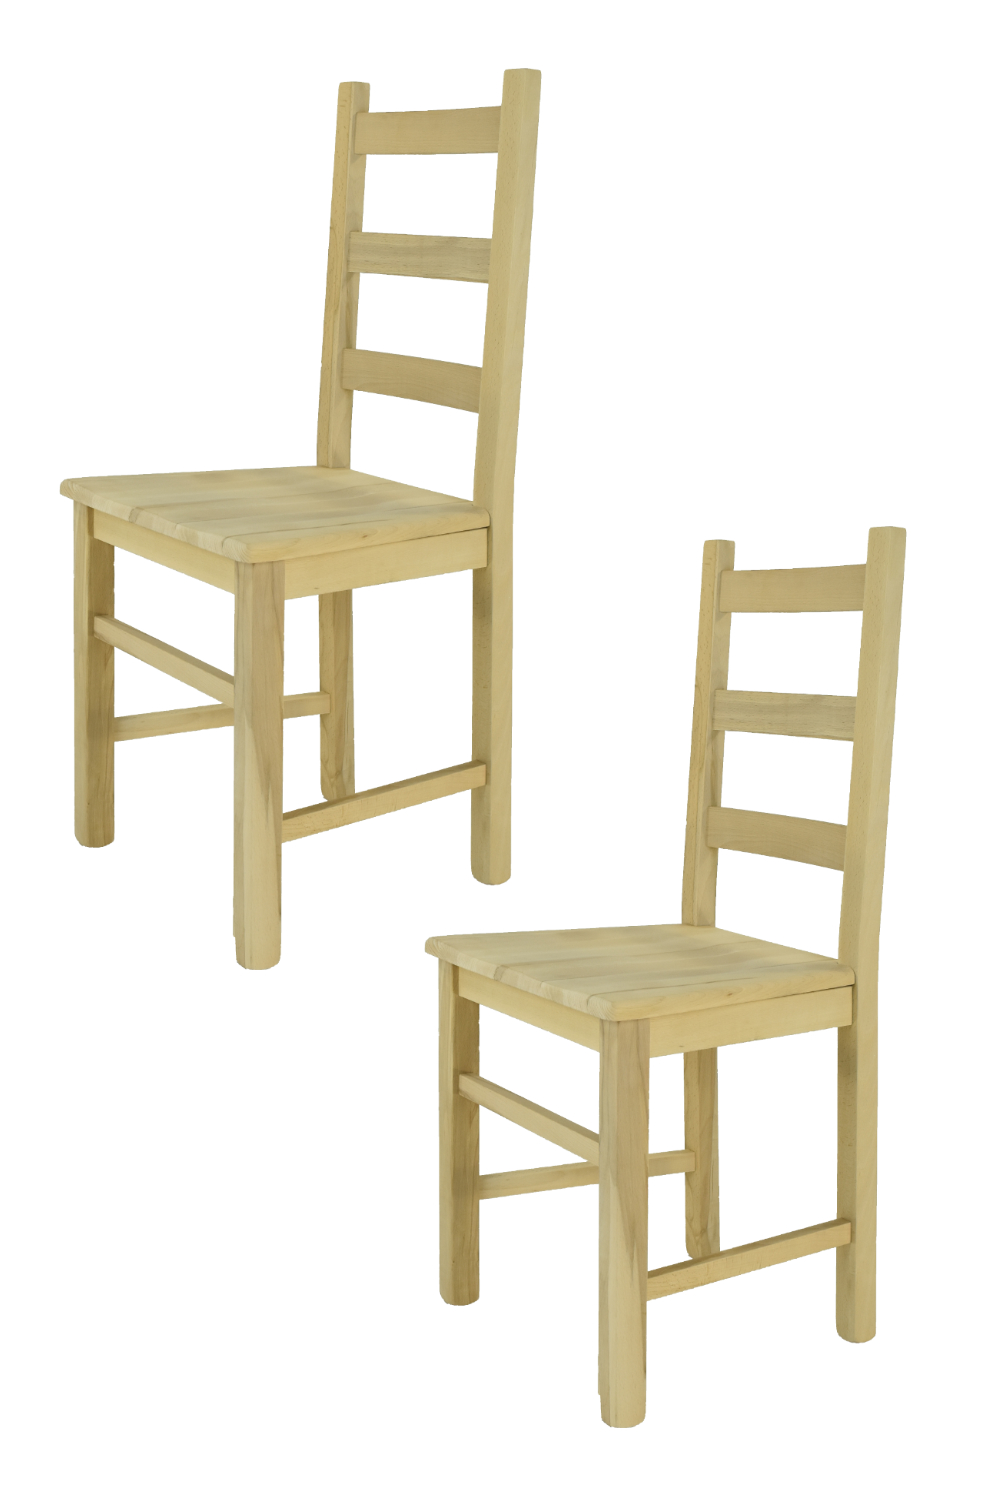 Tommychairs – Set 2 sillas Rustica para cocina y comedor, estructura en madera de haya lijada, no tratada, 100% natural y asiento en madera